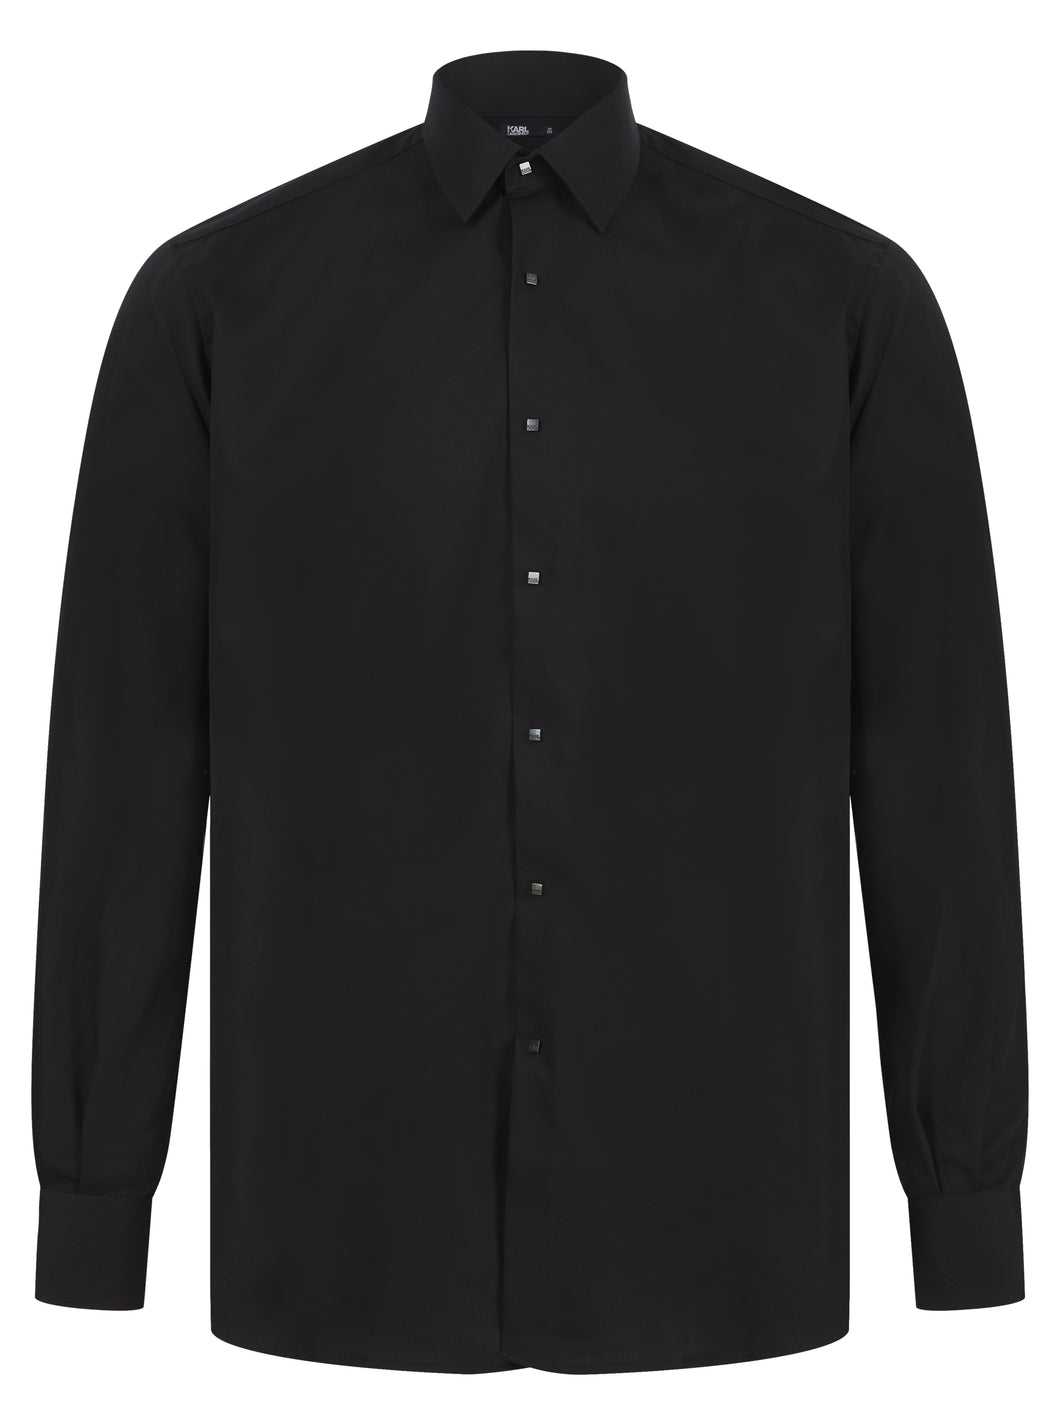 Lagerfeld L/S Press Stud Shirt Black